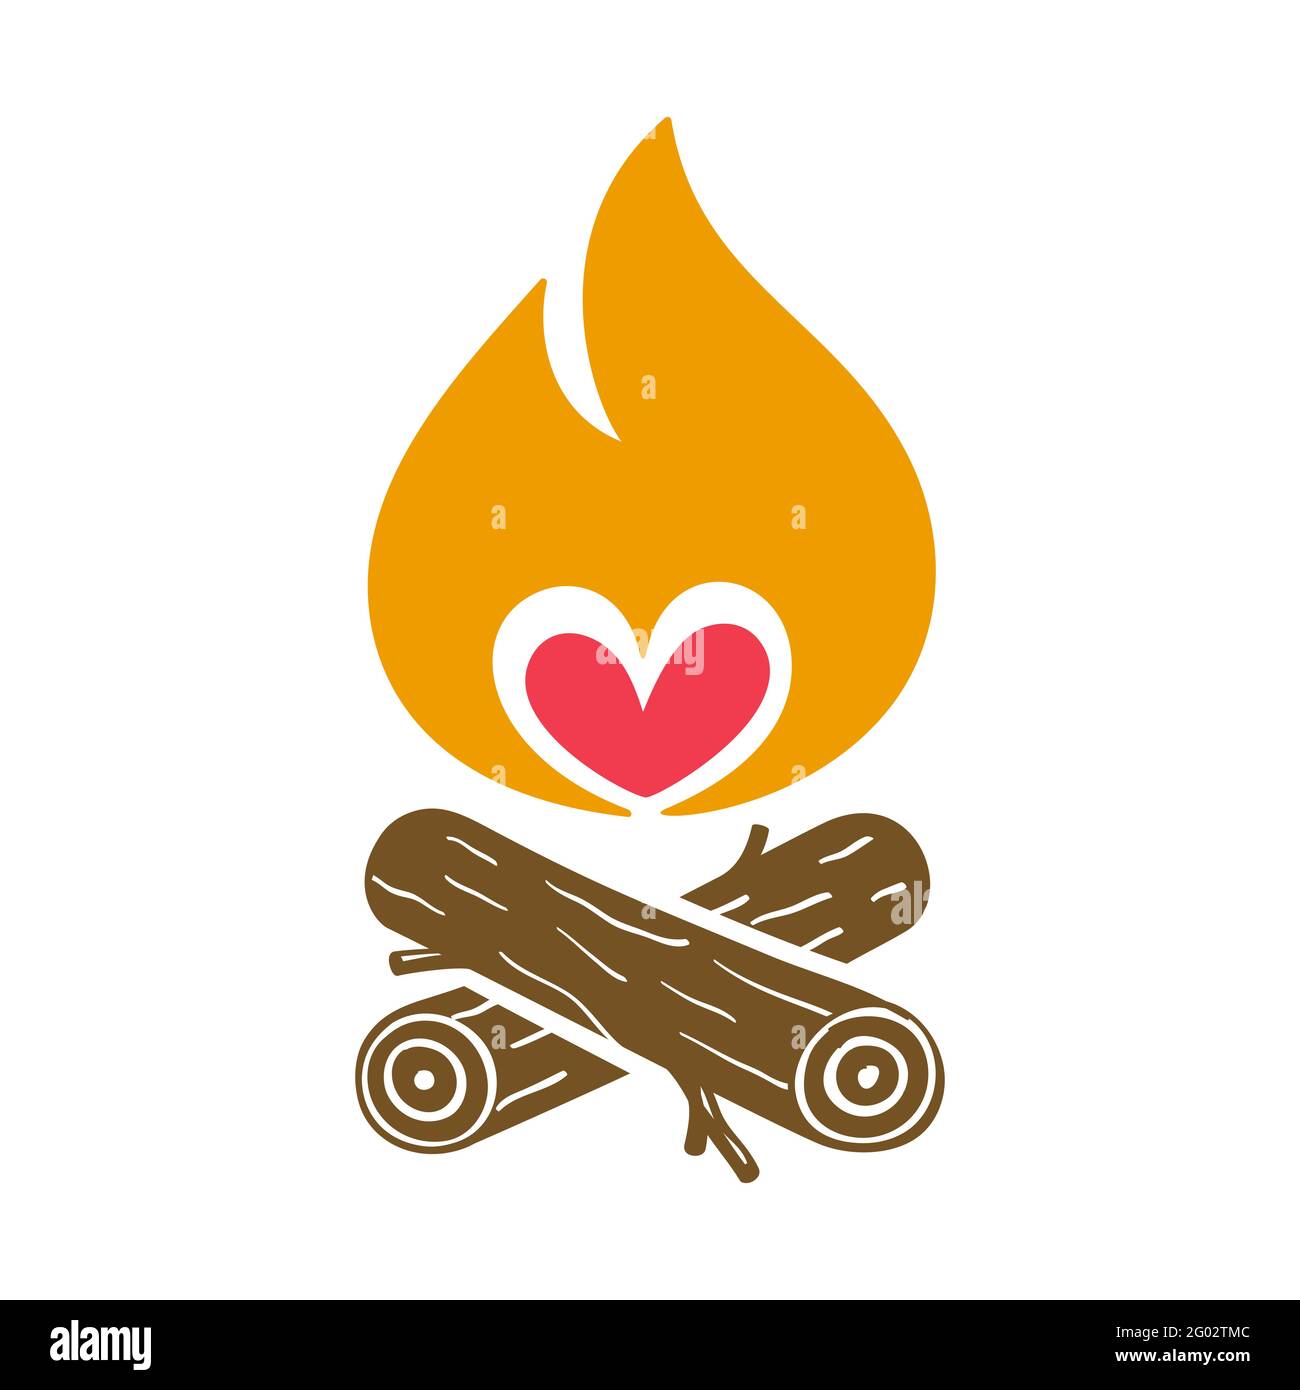 Campfire kreative Vektor-Symbol mit einem Herz-Symbol, isoliert auf dem Hintergrund. Stock Vektor